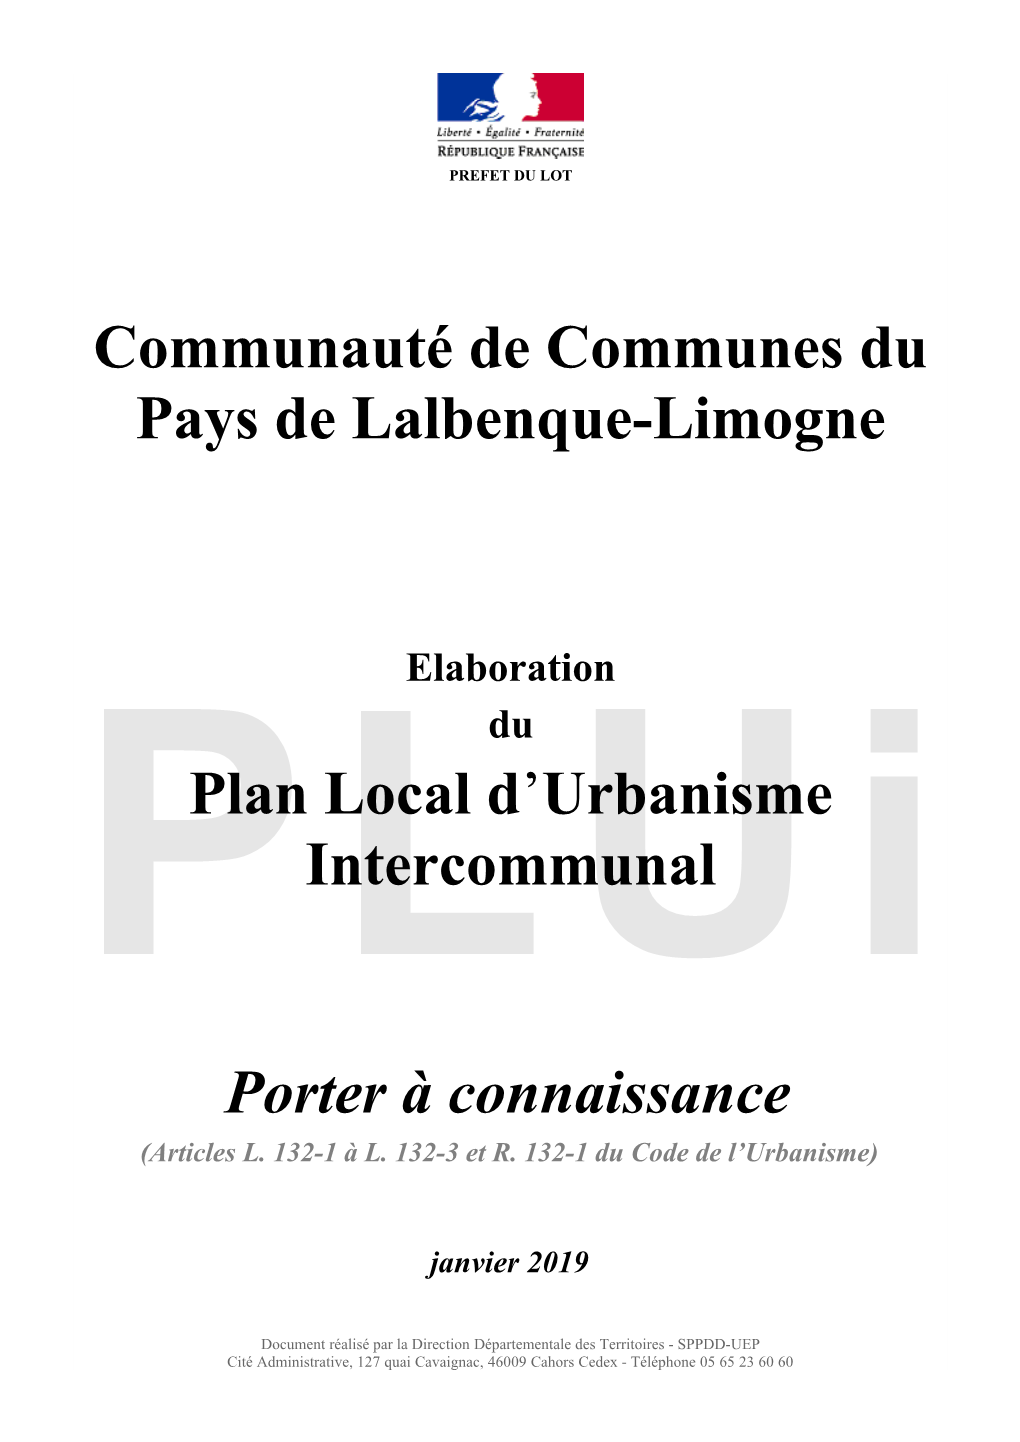 Communauté De Communes Du Pays De Lalbenque-Limogne